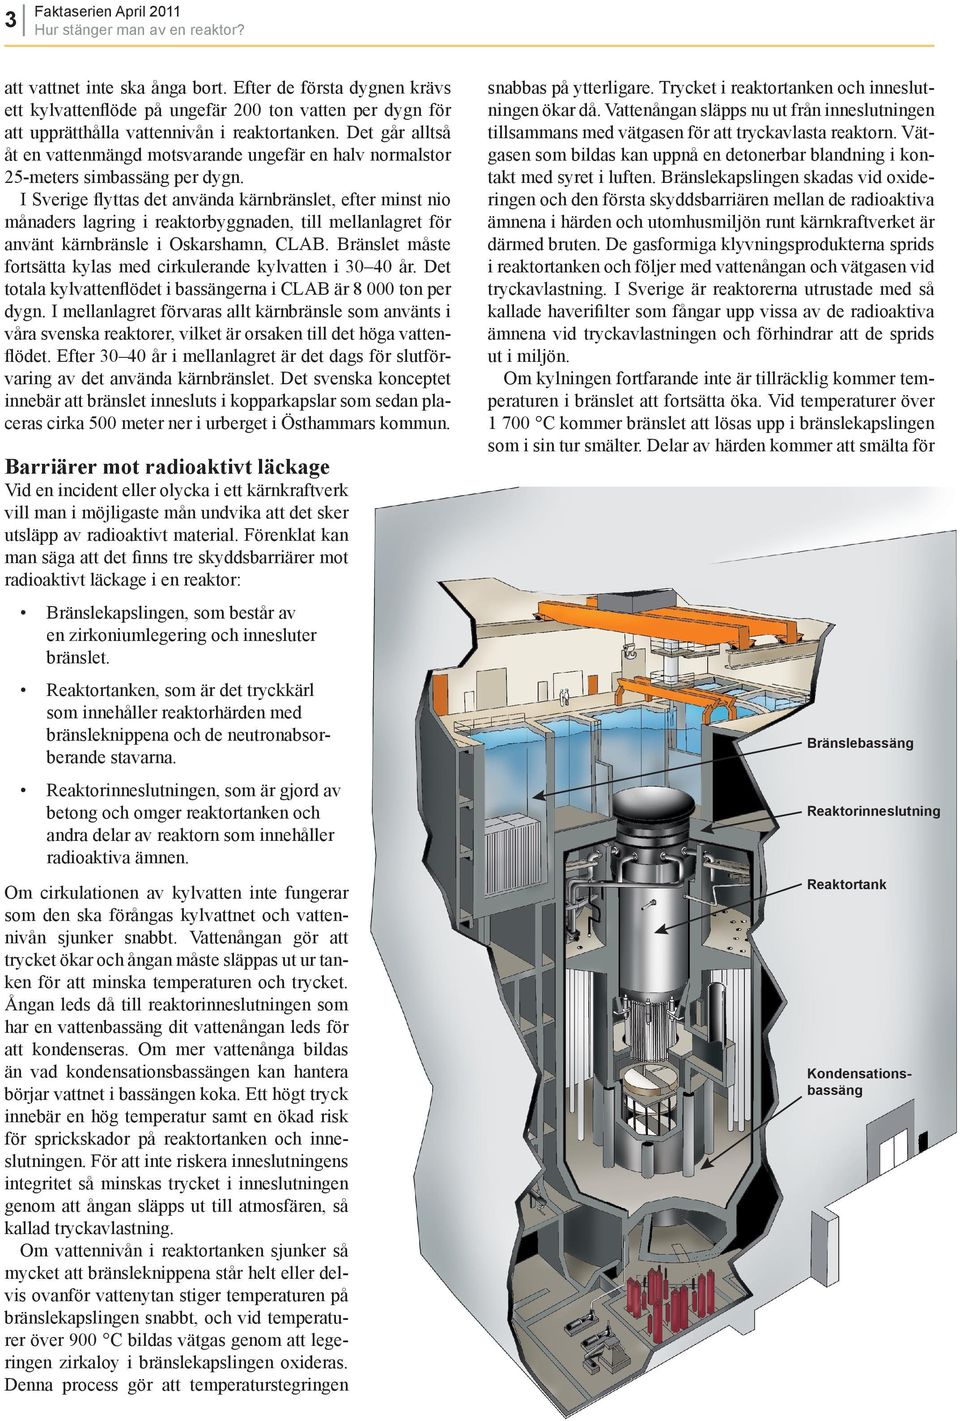 Den sista skyddsbarriären mot radioaktivt läckage är reaktorinneslutningen. Temperaturen på härdsmältan gör att den även kan smälta igenom reaktorinneslutningen om ingen kylning tillförs.